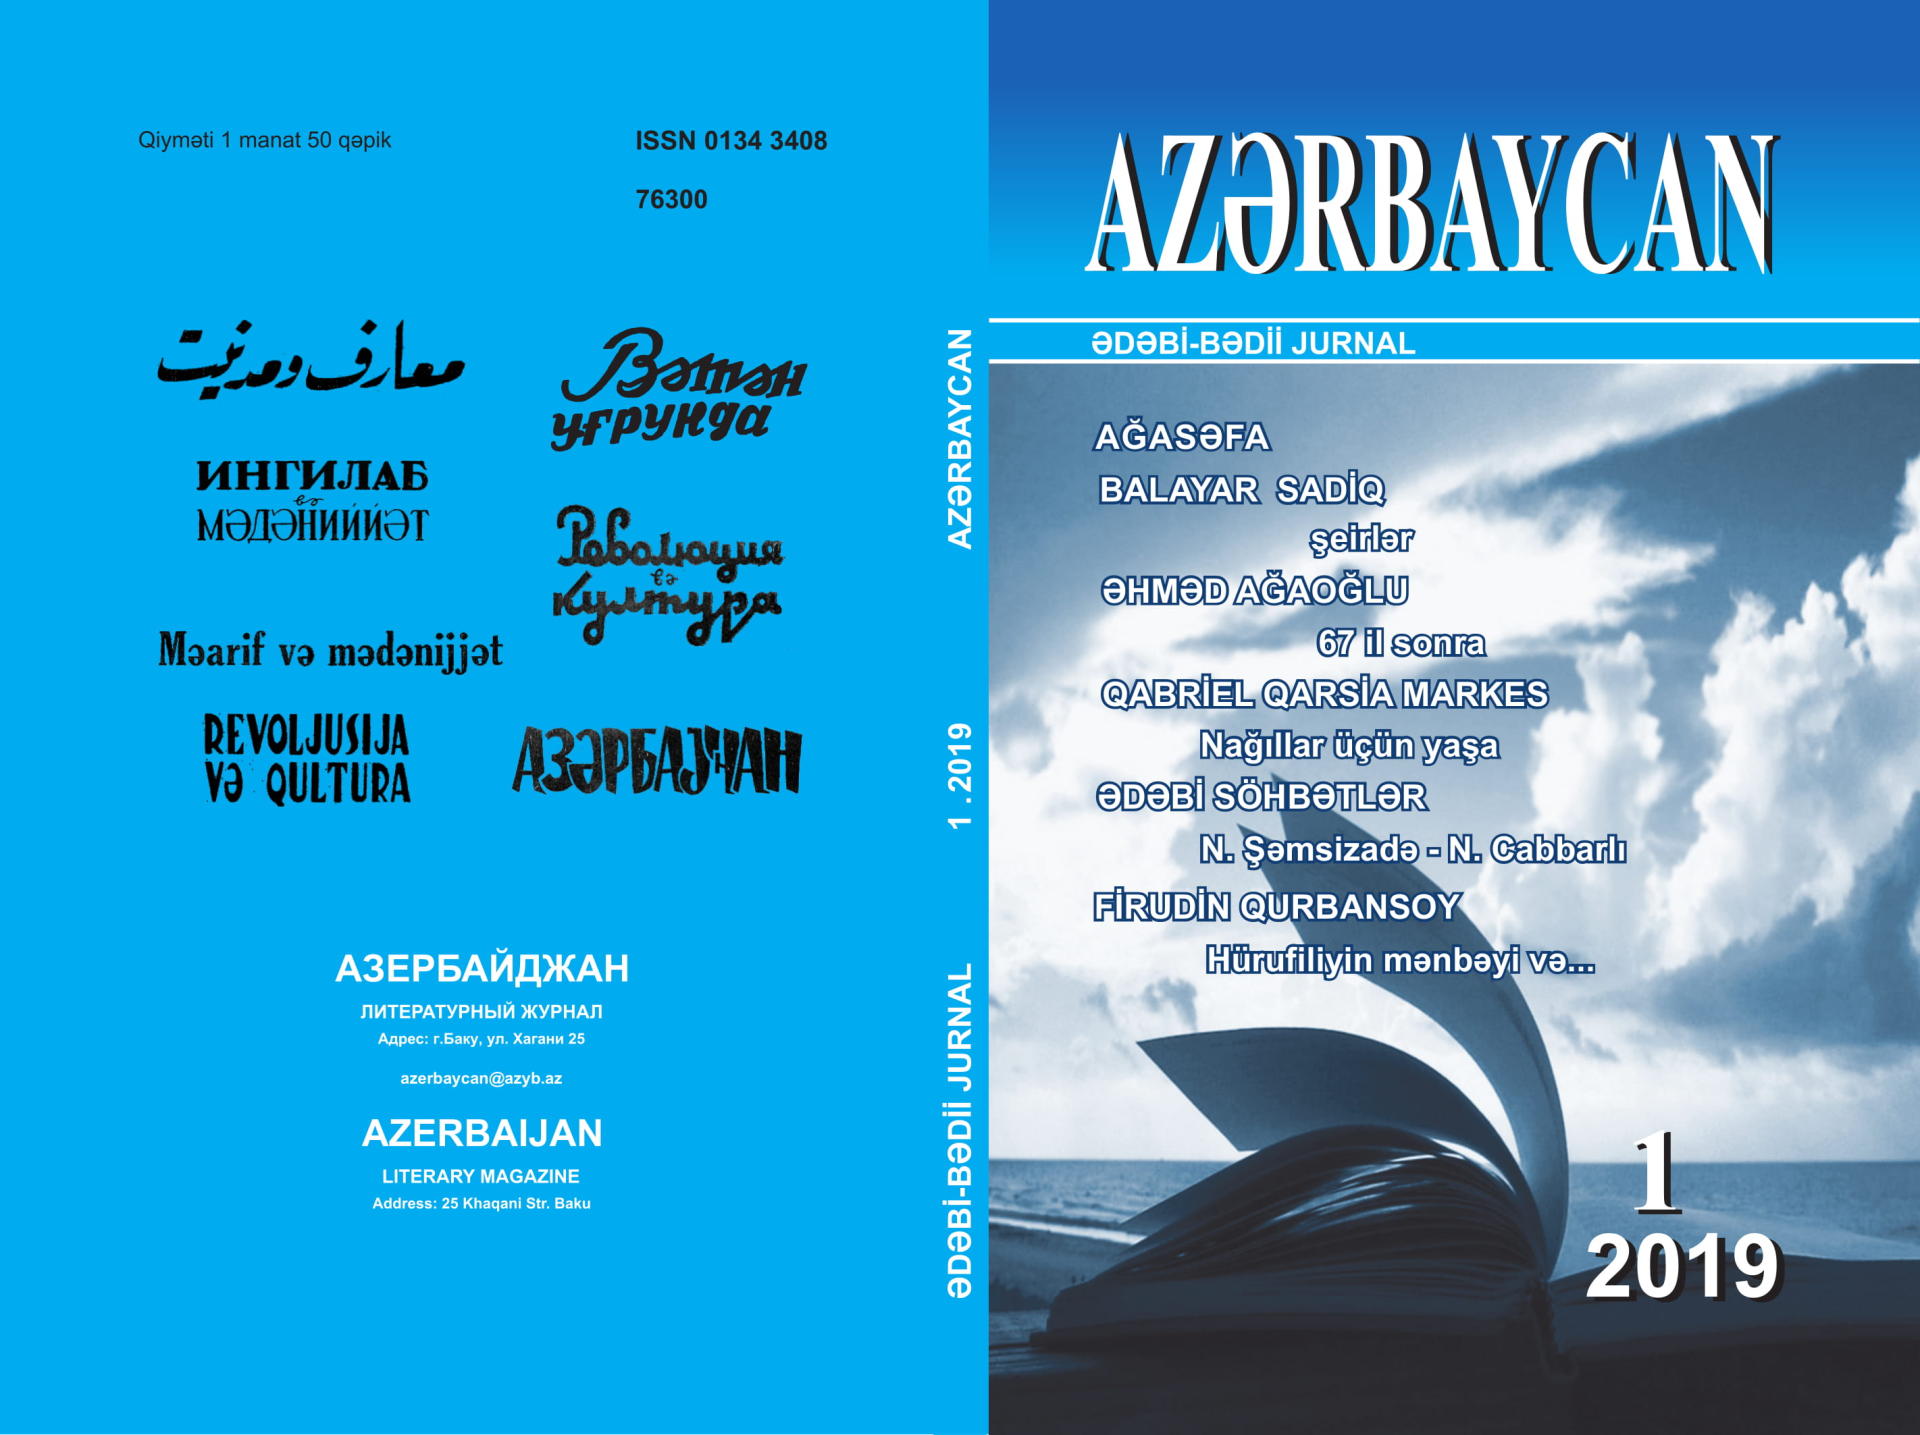 “Azərbaycan“ jurnalının yeni ildə ilk sayı artıq satışda